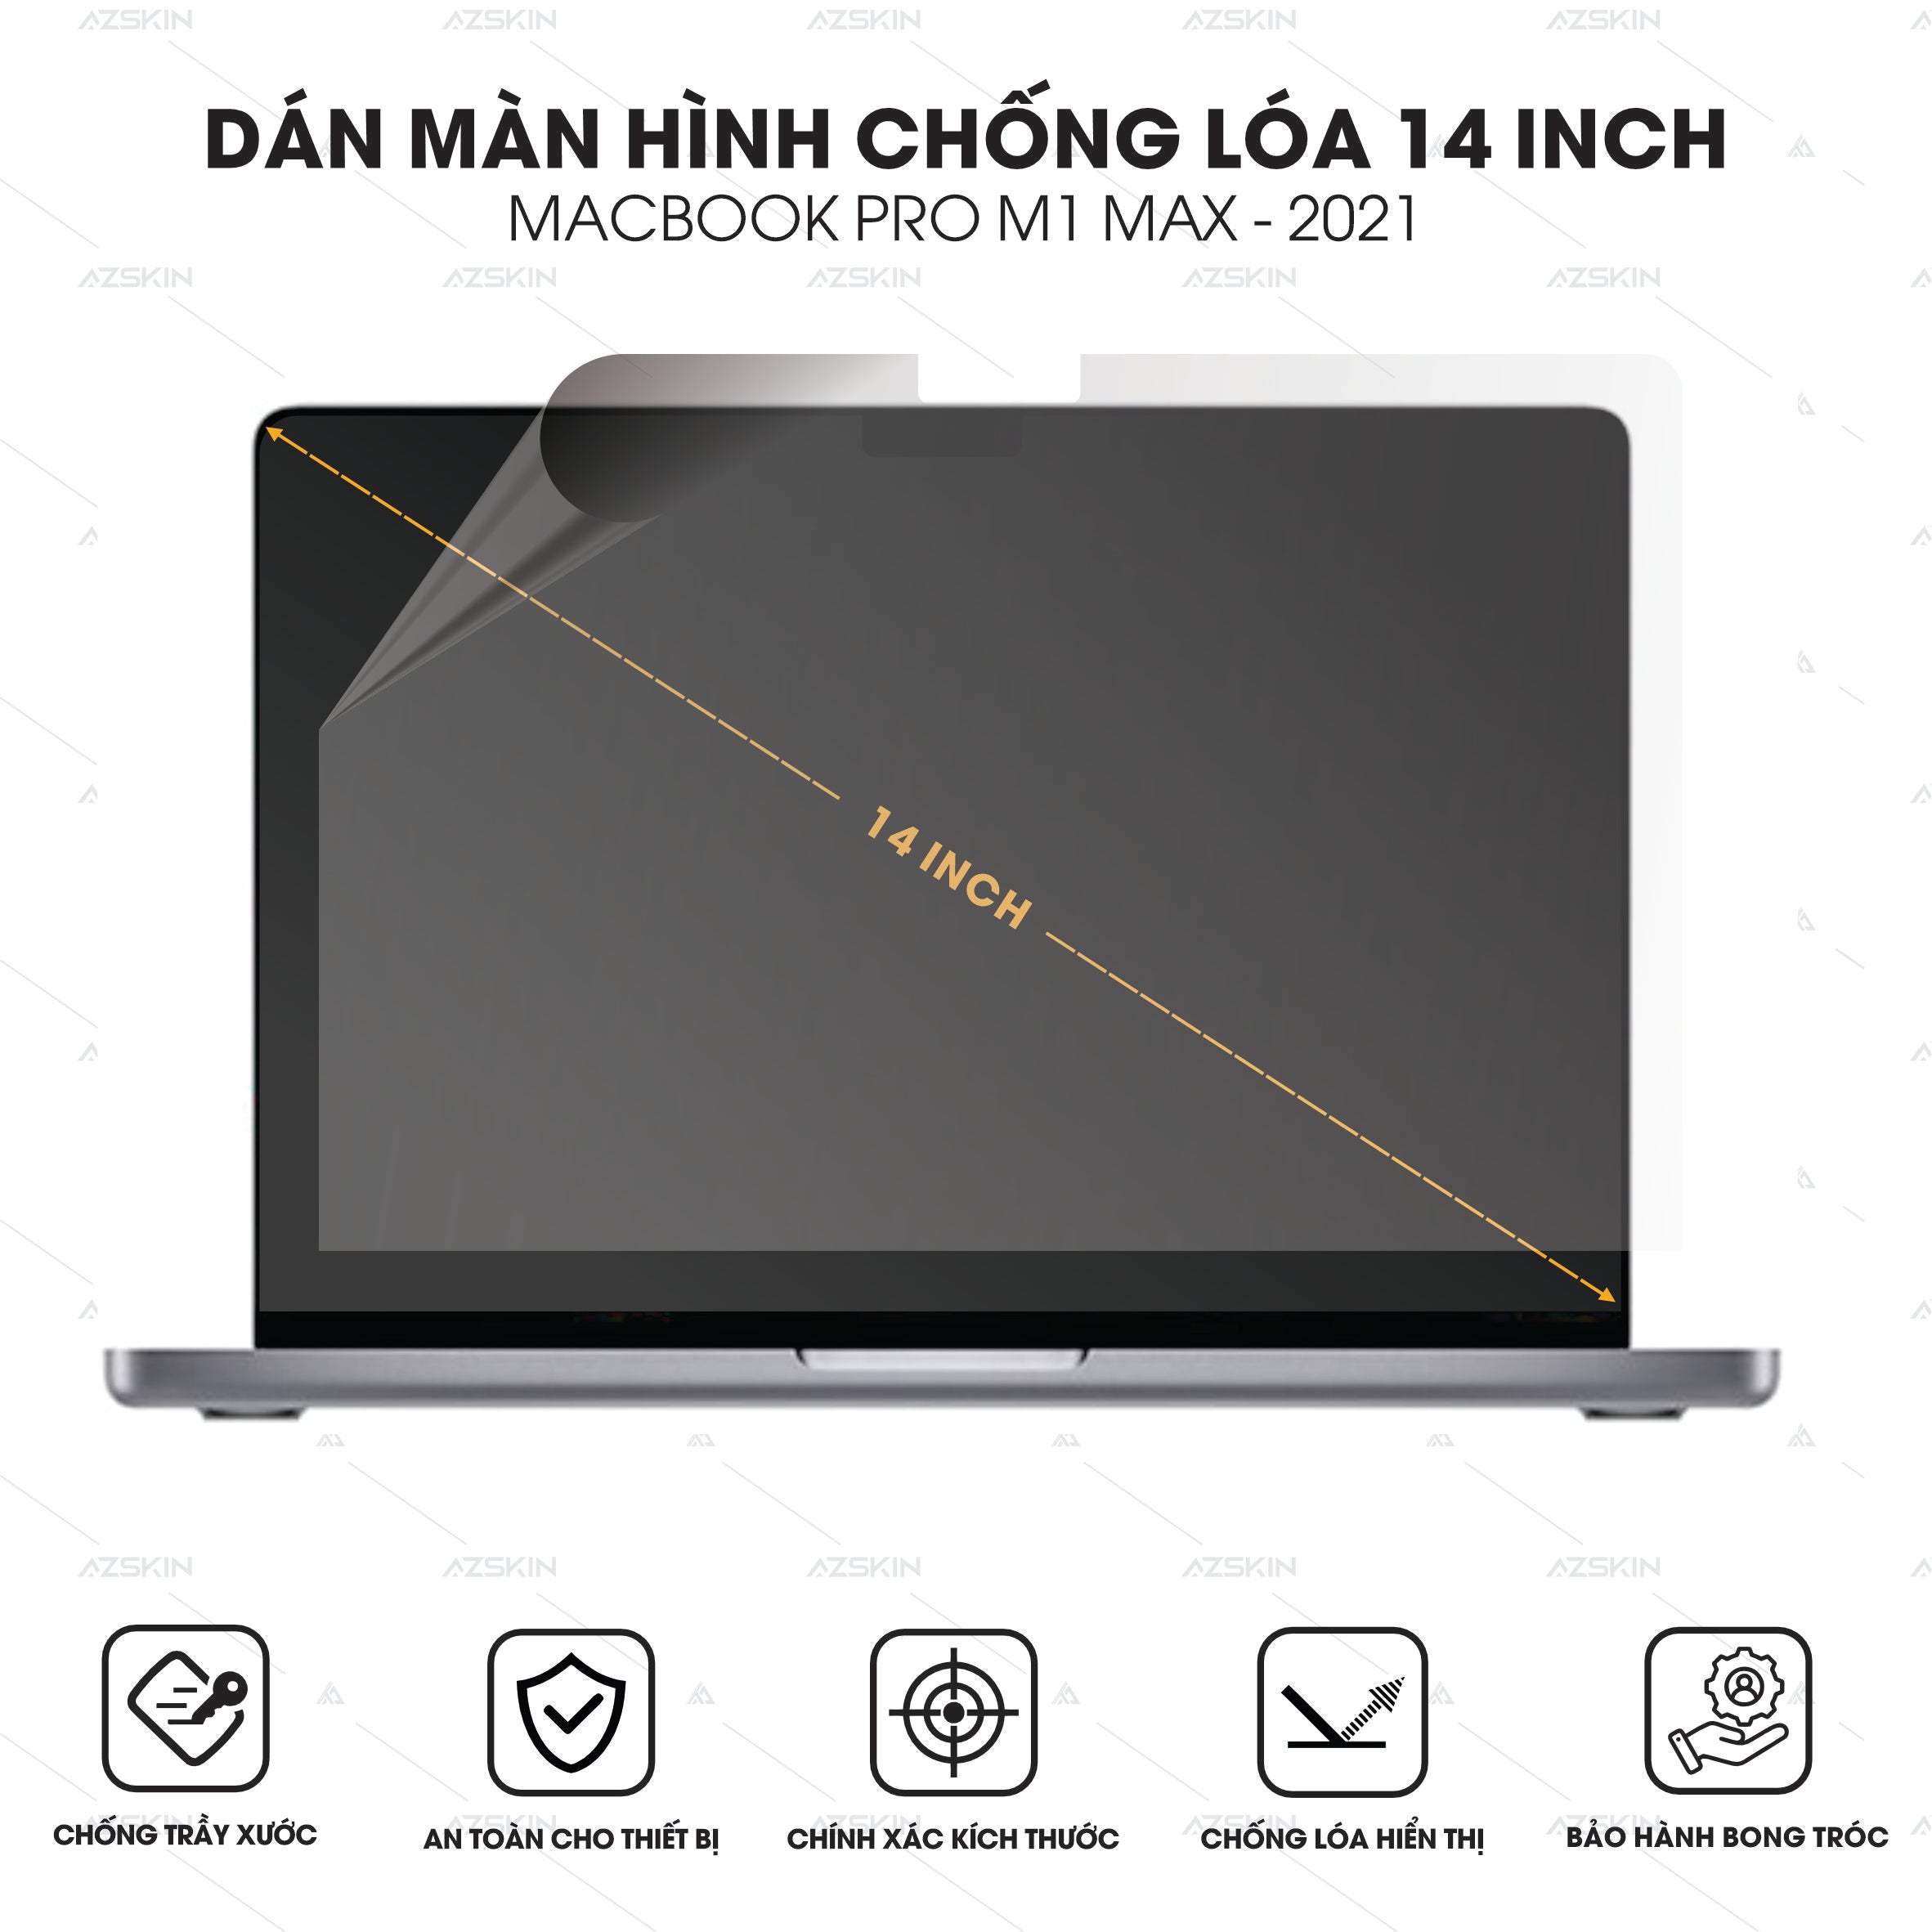 Miếng dán màn hình chống loá Macbook Pro 14 inch M1 / M1 Max